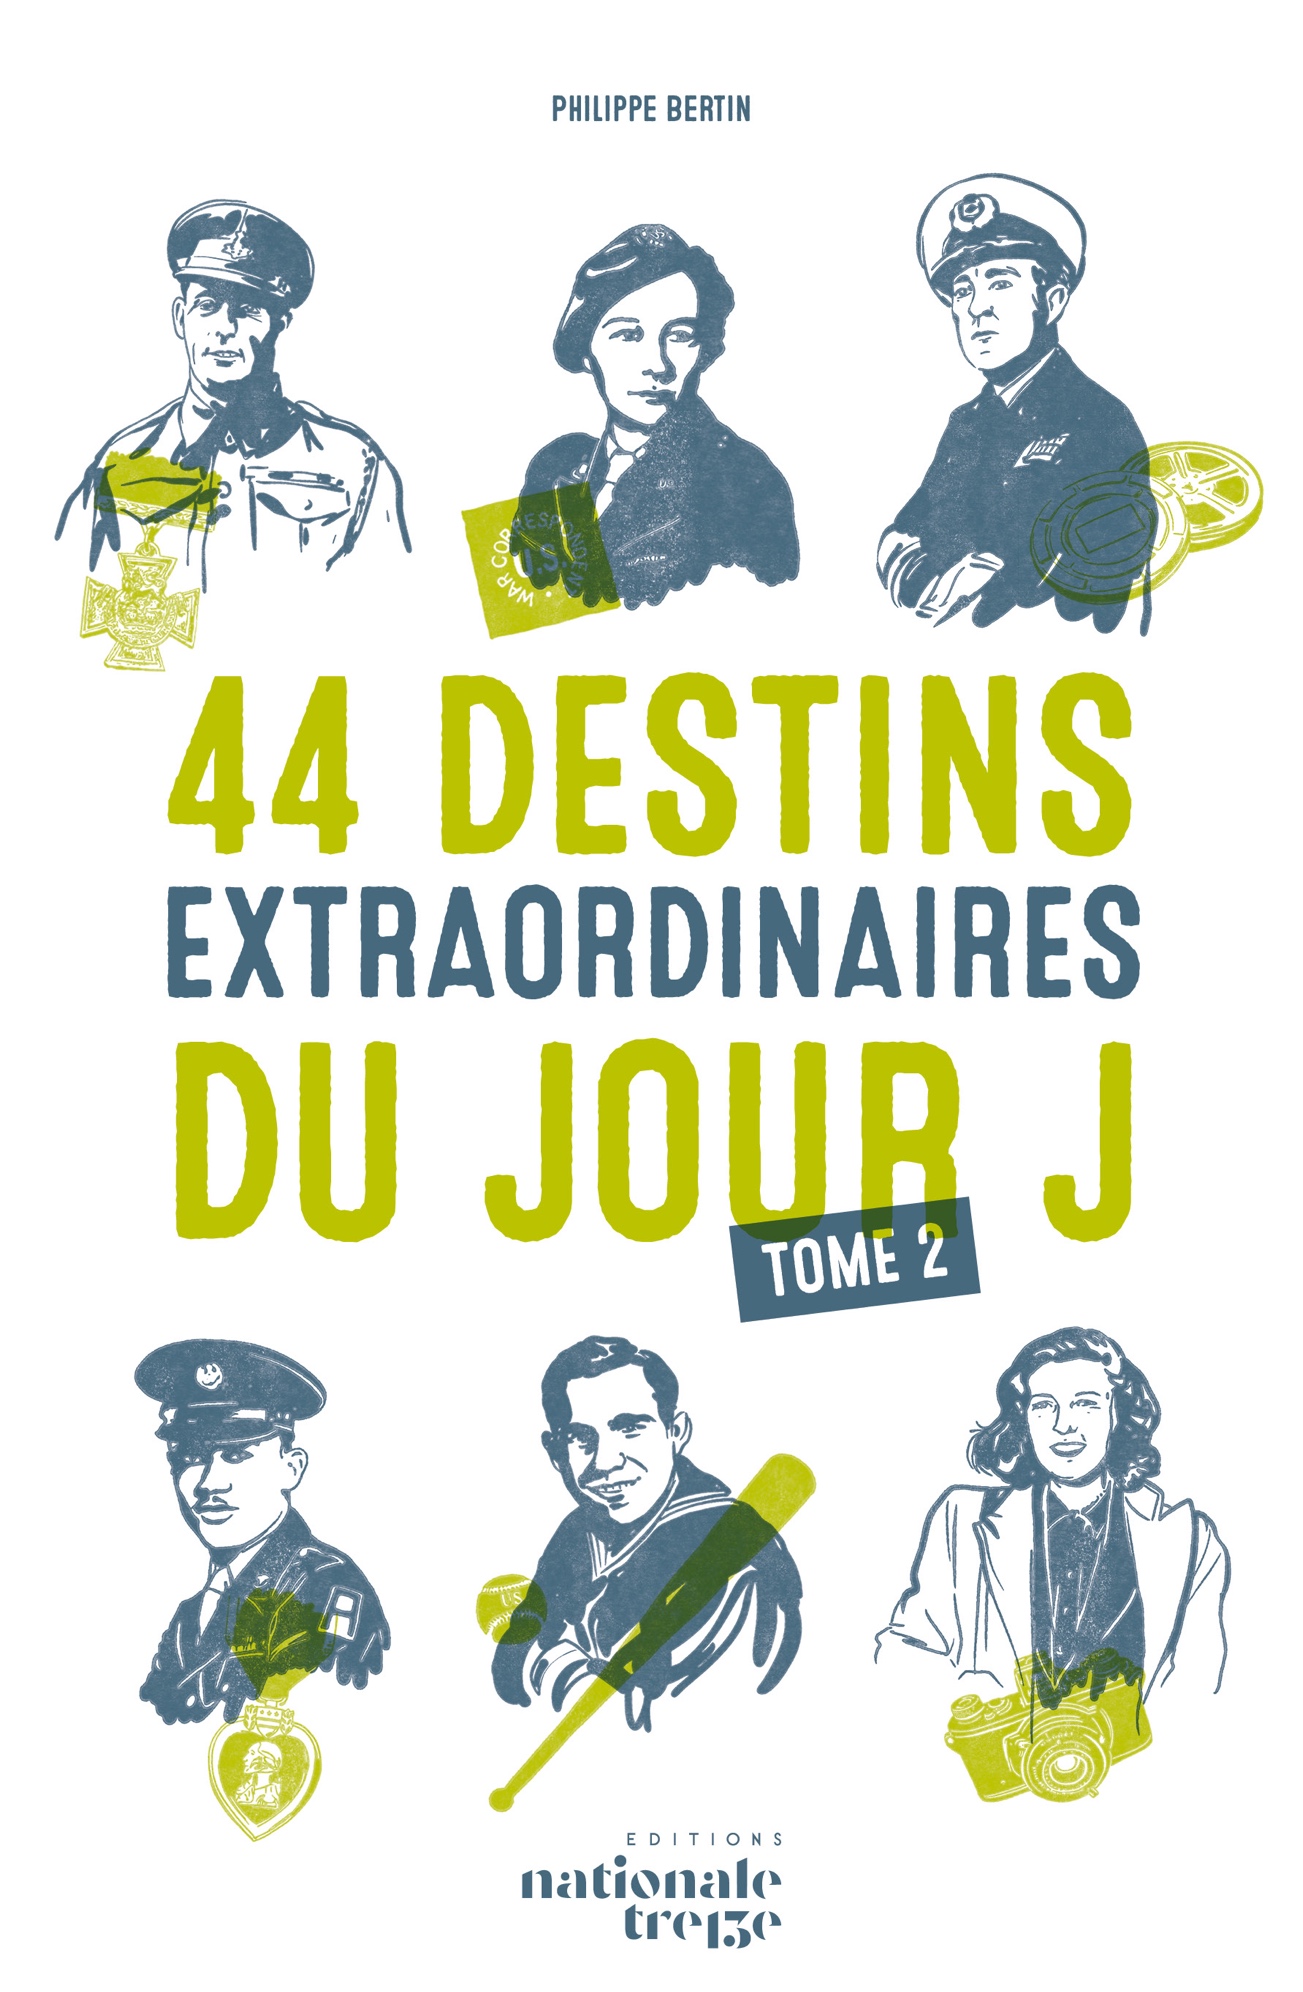 44 Destins incroyables du Jour J de Philippe Bertin tome 2